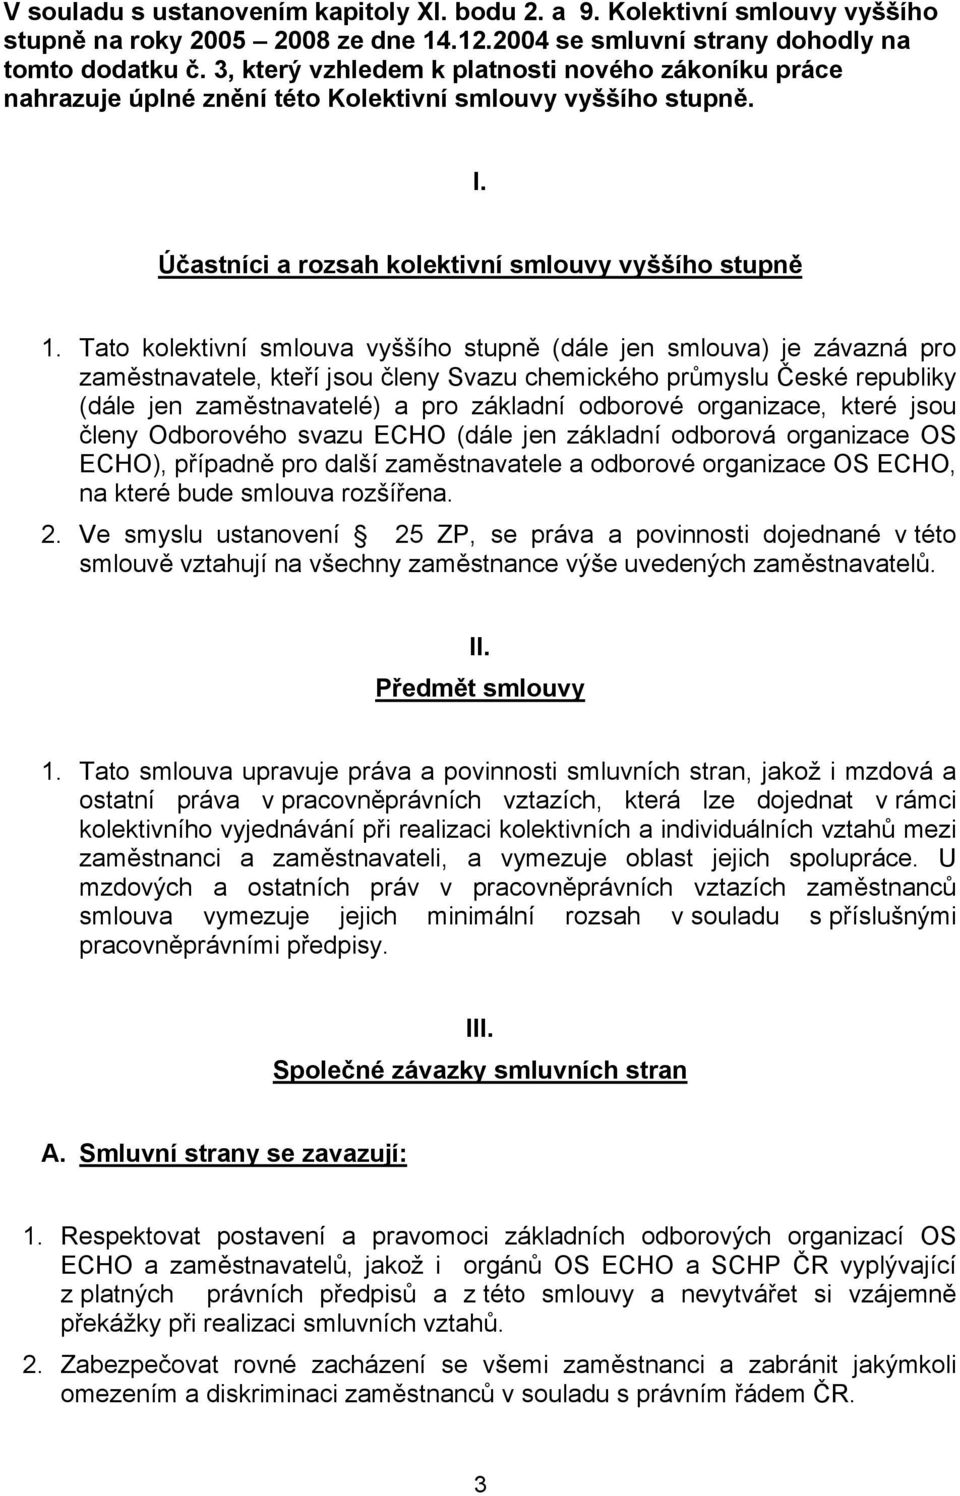 Tato kolektivní smlouva vyššího stupně (dále jen smlouva) je závazná pro zaměstnavatele, kteří jsou členy Svazu chemického průmyslu České republiky (dále jen zaměstnavatelé) a pro základní odborové